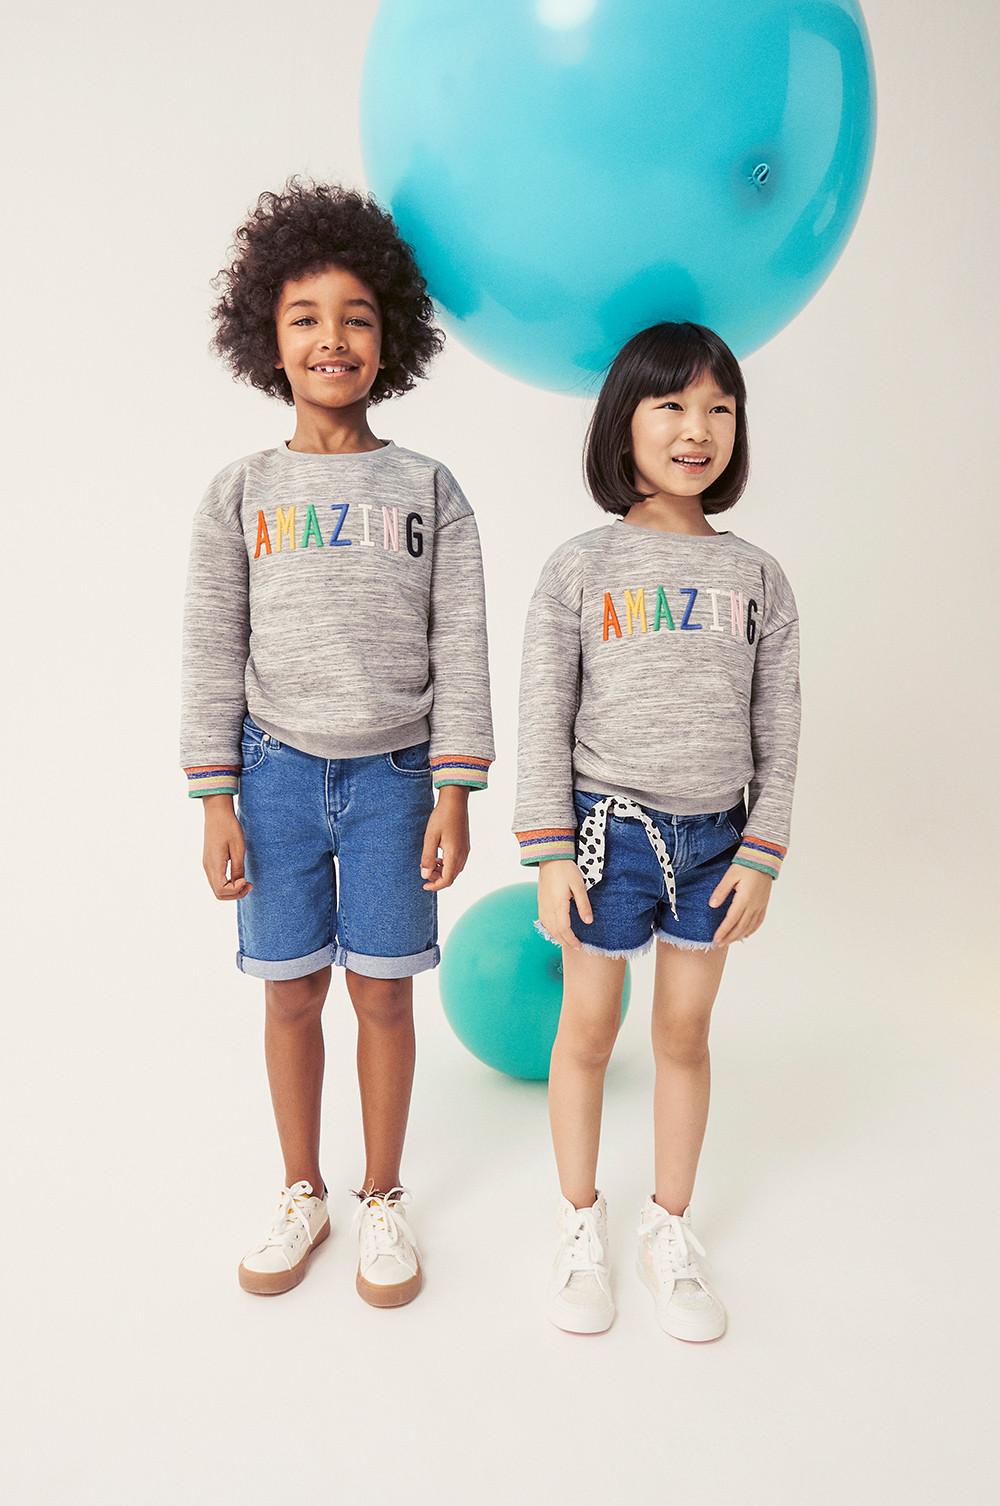 No te pierdas nuestra primera colaboración en moda infantil con Solomon. Esta colorida colección está repleta de motivos y estampados para todos los niños de 0 a 10 años. | Primark